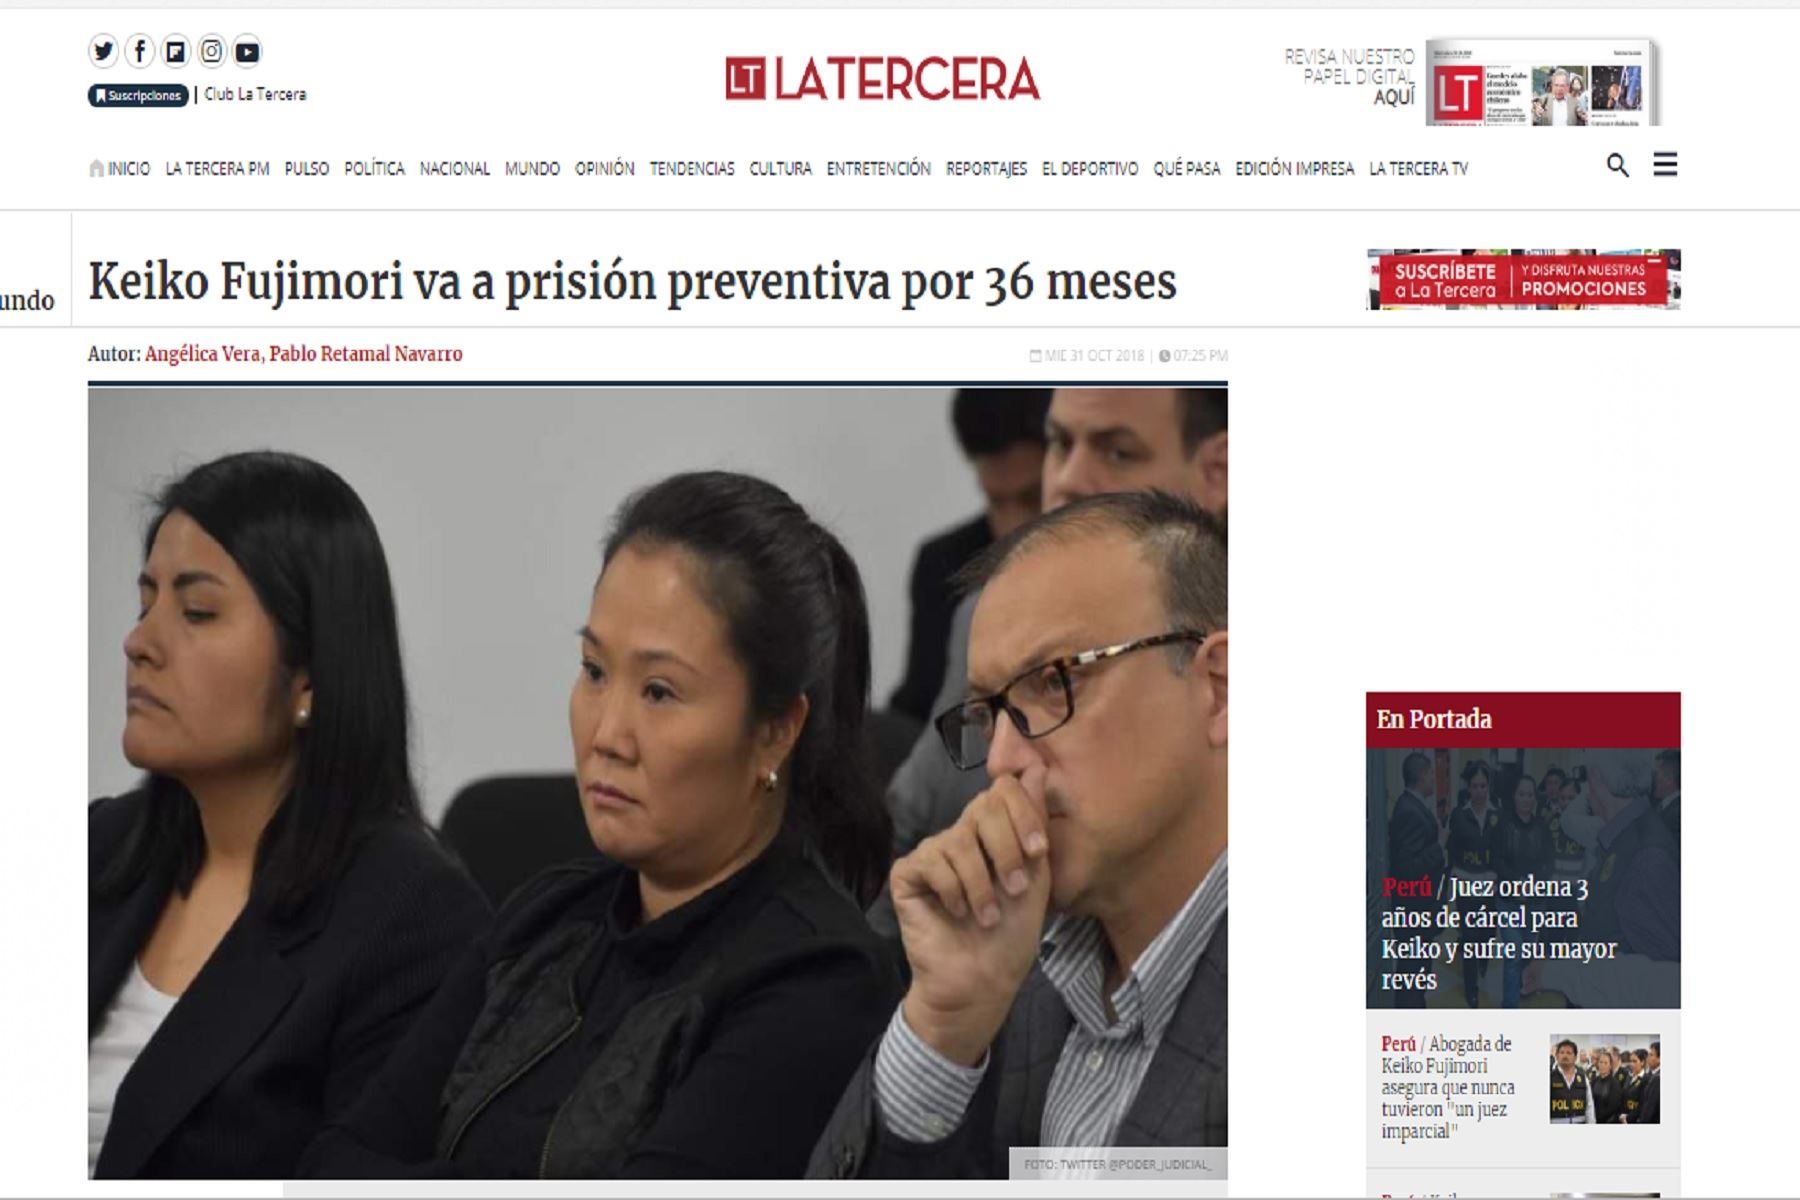 Medios internacionales destacan la medida de prisión preventiva contra Keiko Fujimori.